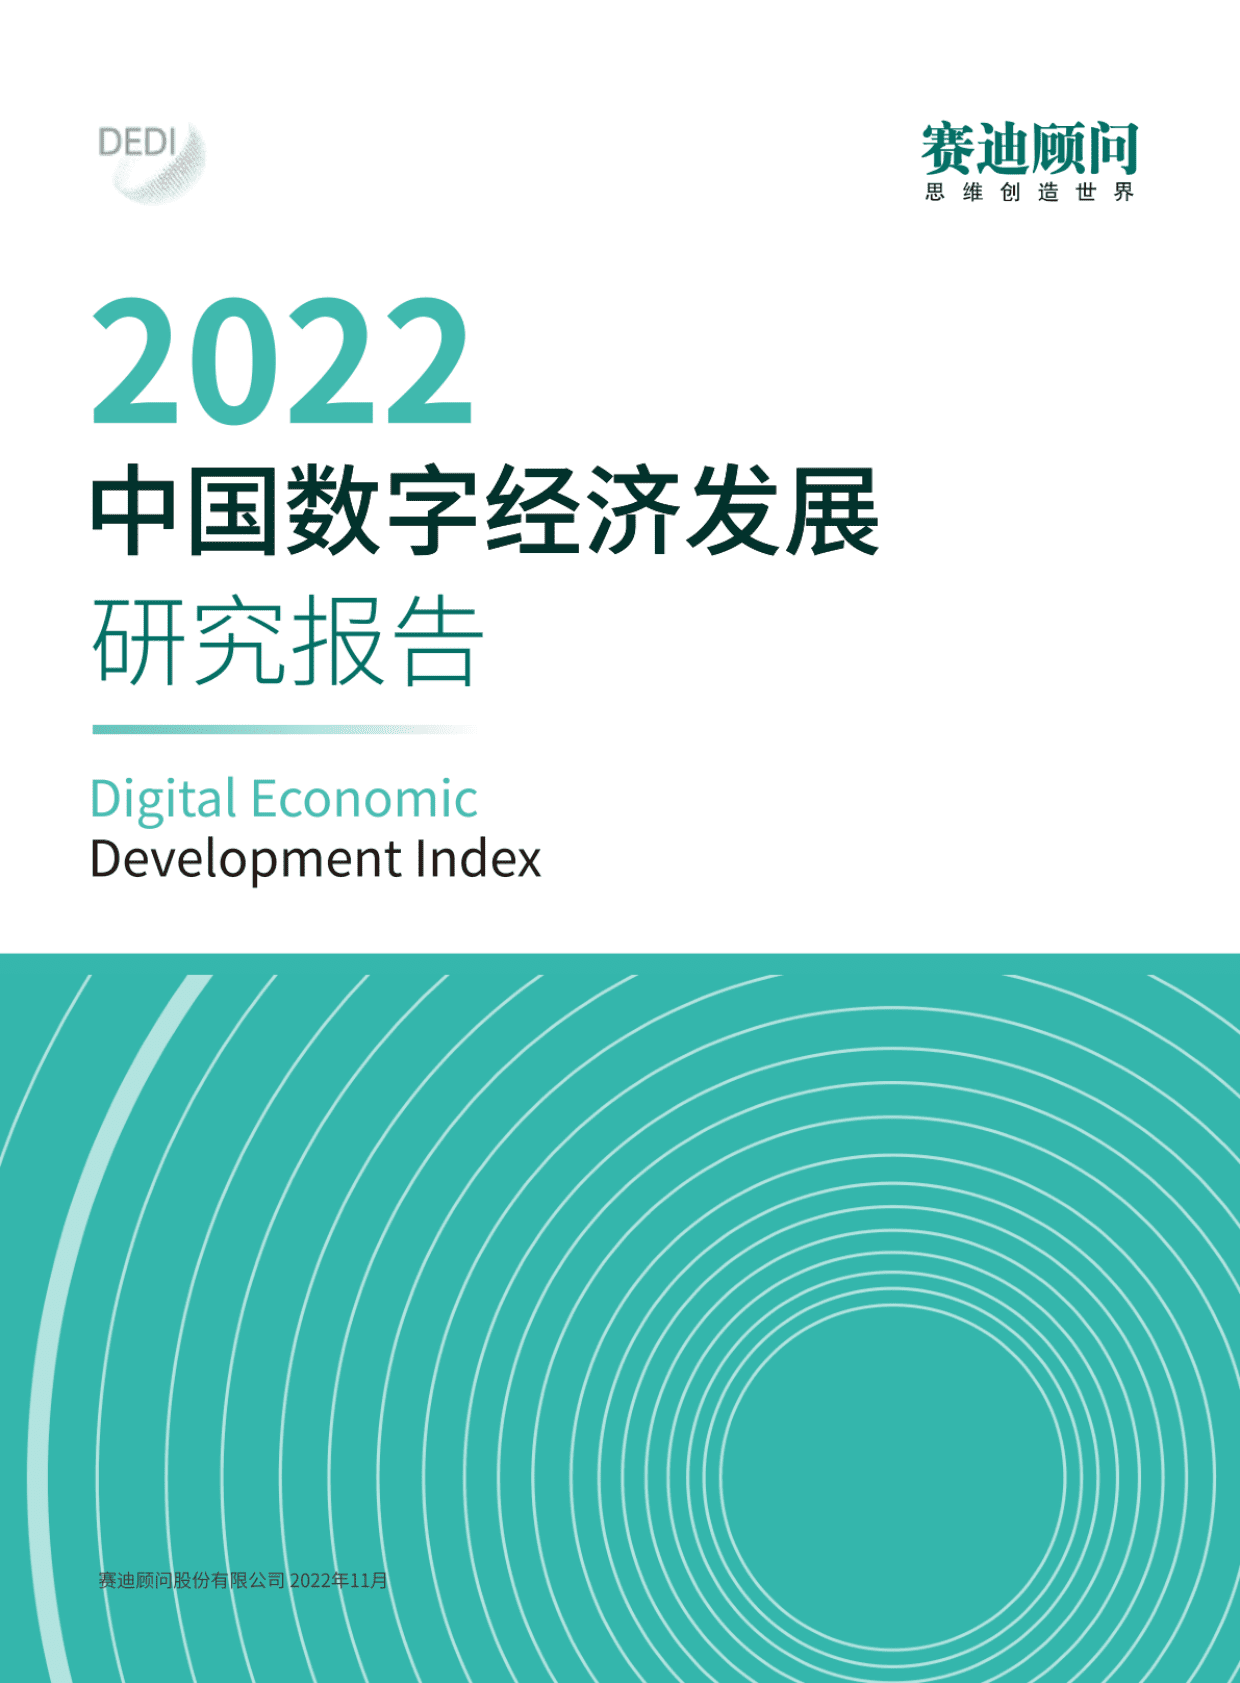 《中国城市数字经济发展报告2022》 正式发布_上海频道_央视网